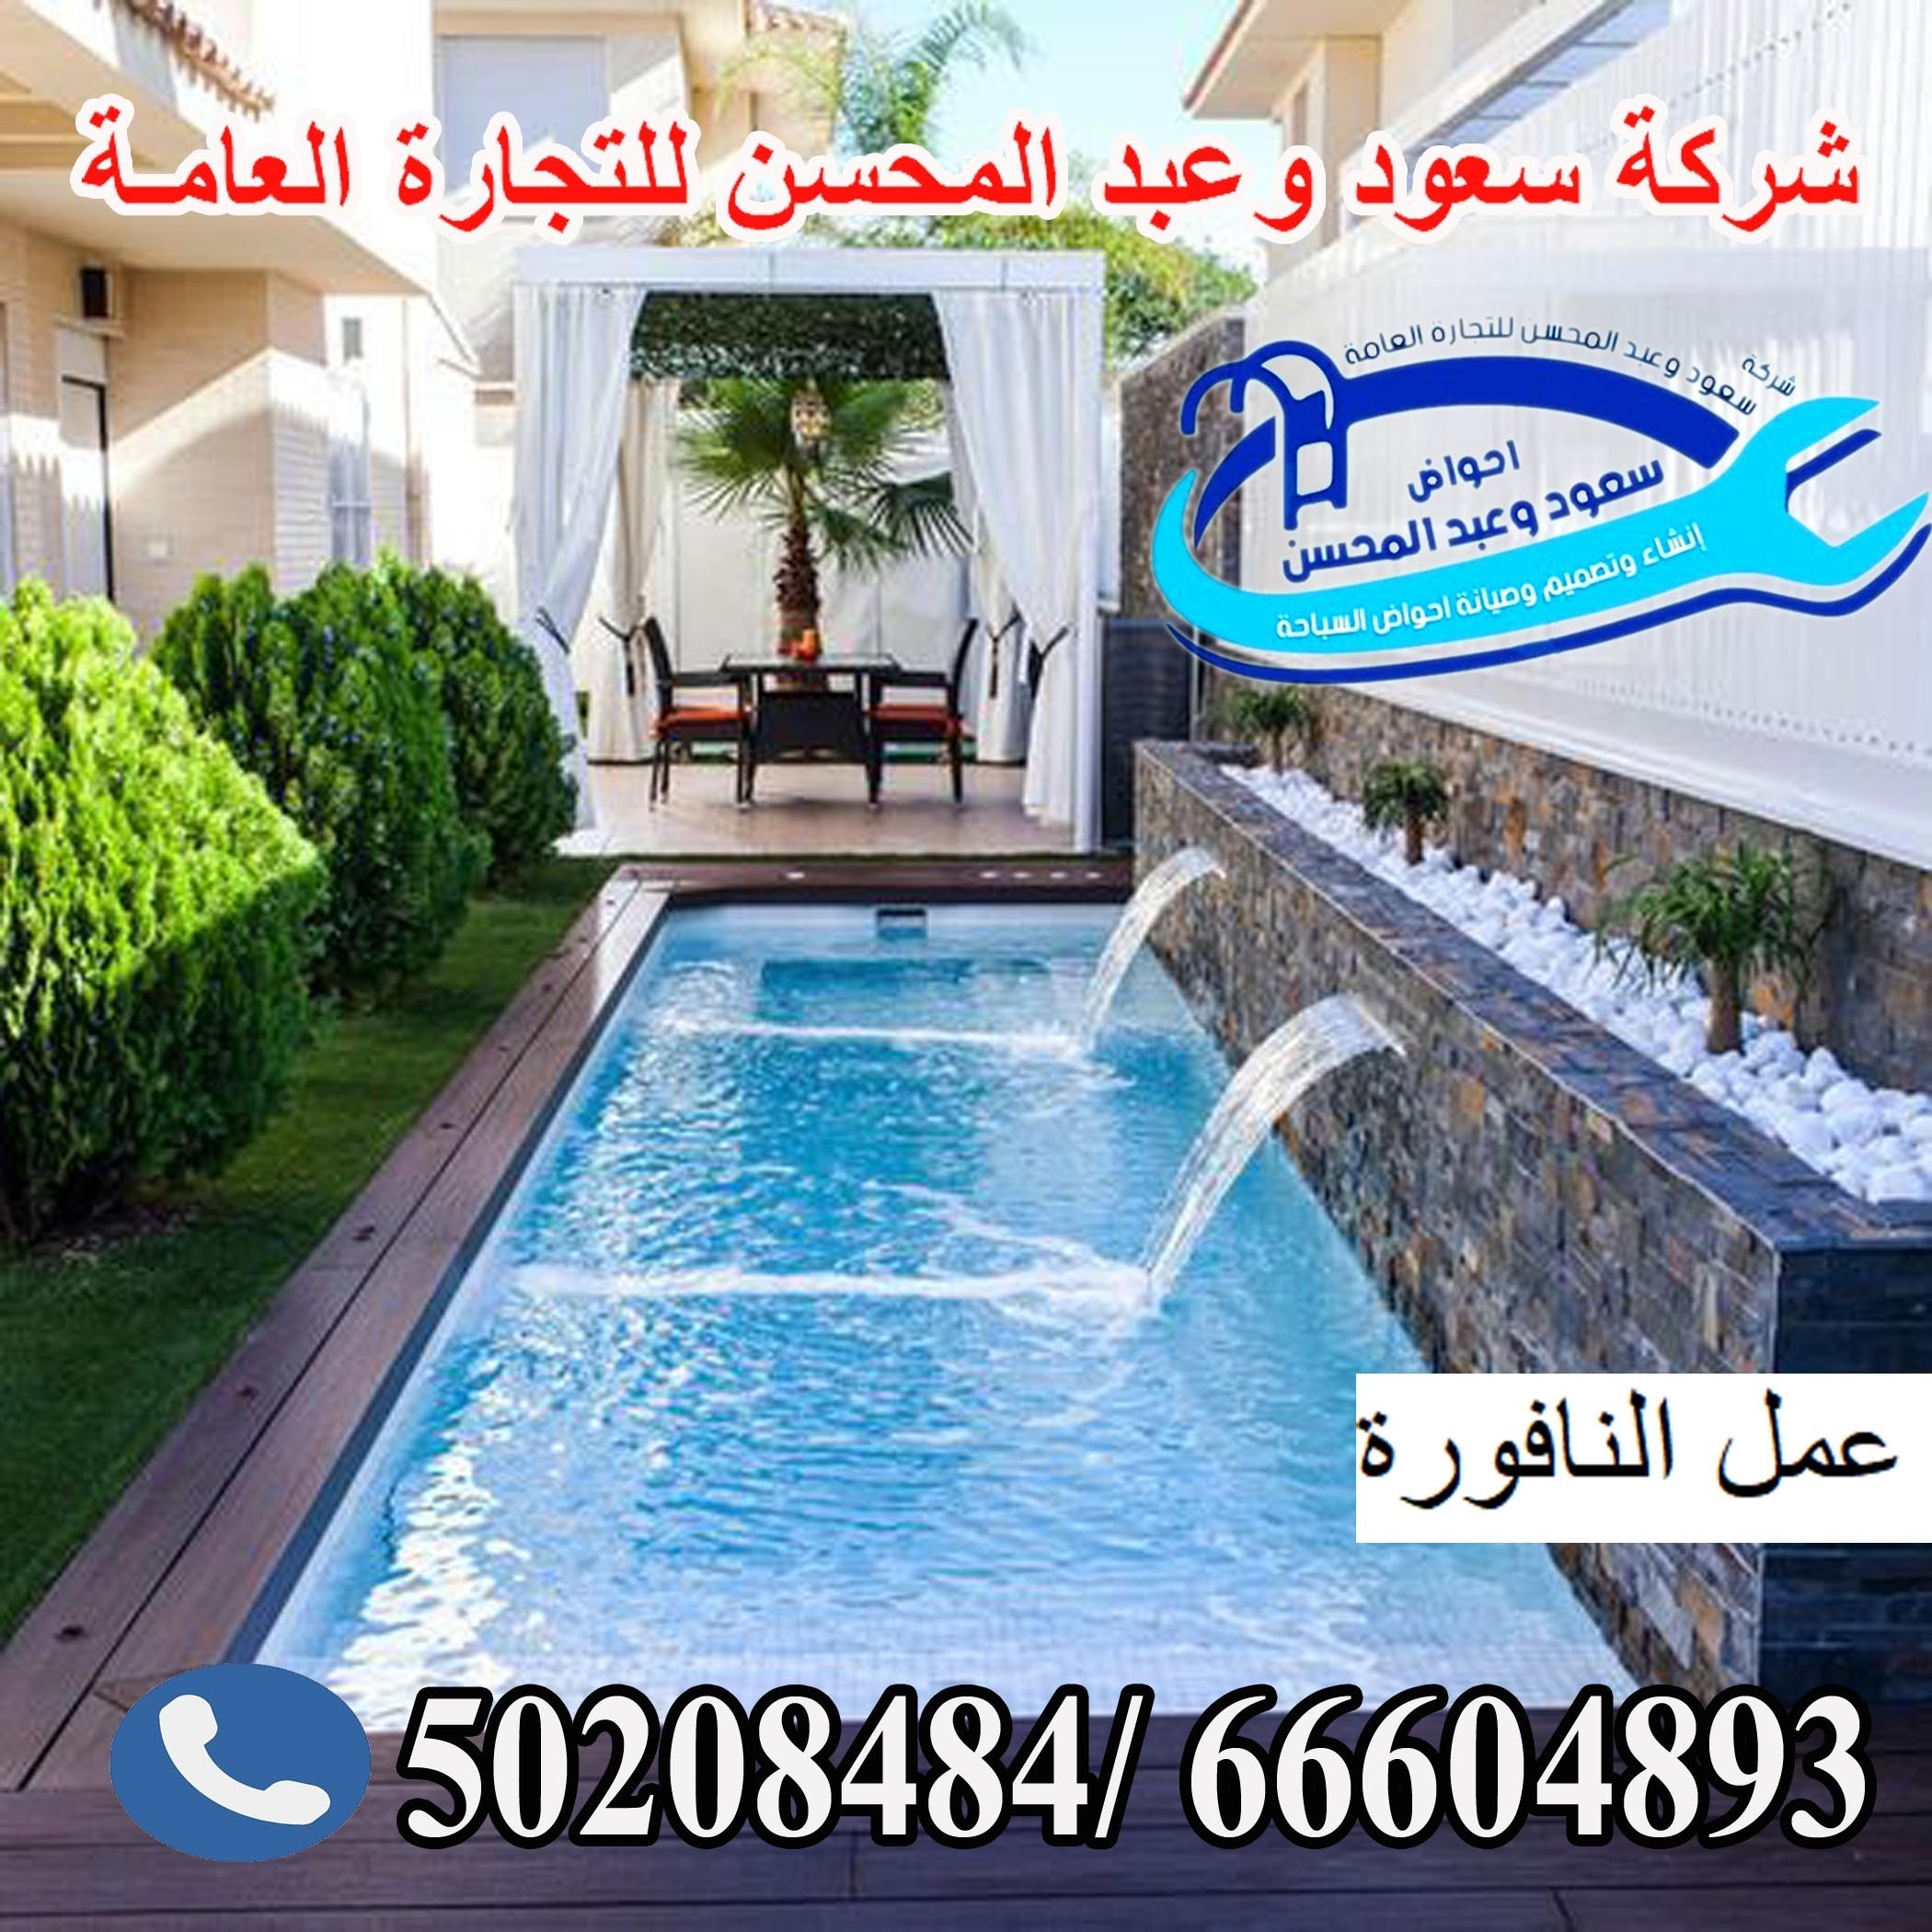 swimming pool maintenance kuwait 